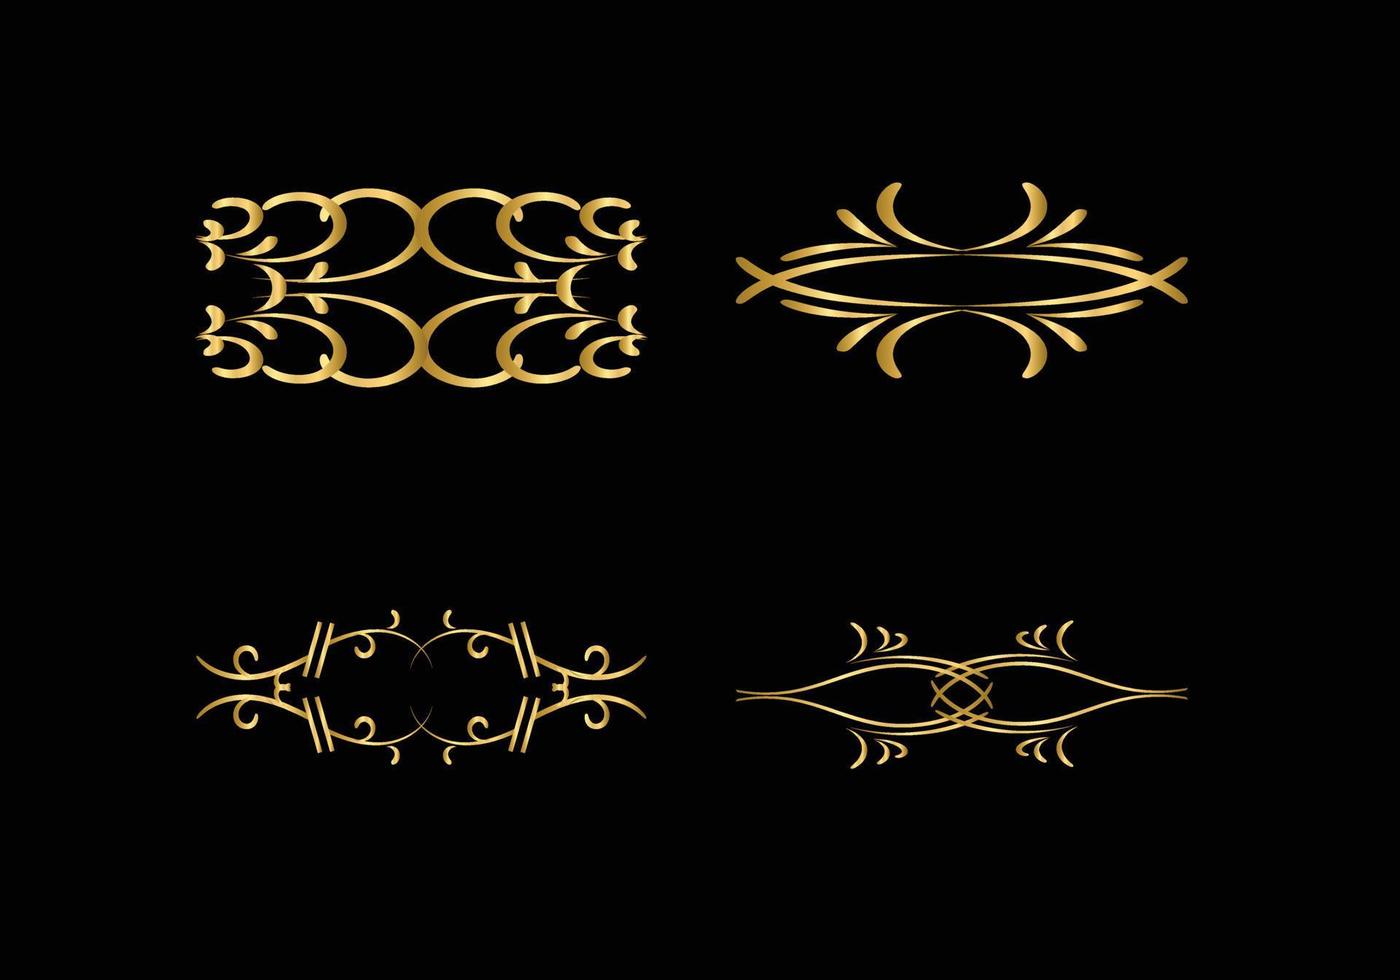 gouden decoratie en ornamenten elementen ingesteld op zwarte achtergrond. bloemen sieraad. vector